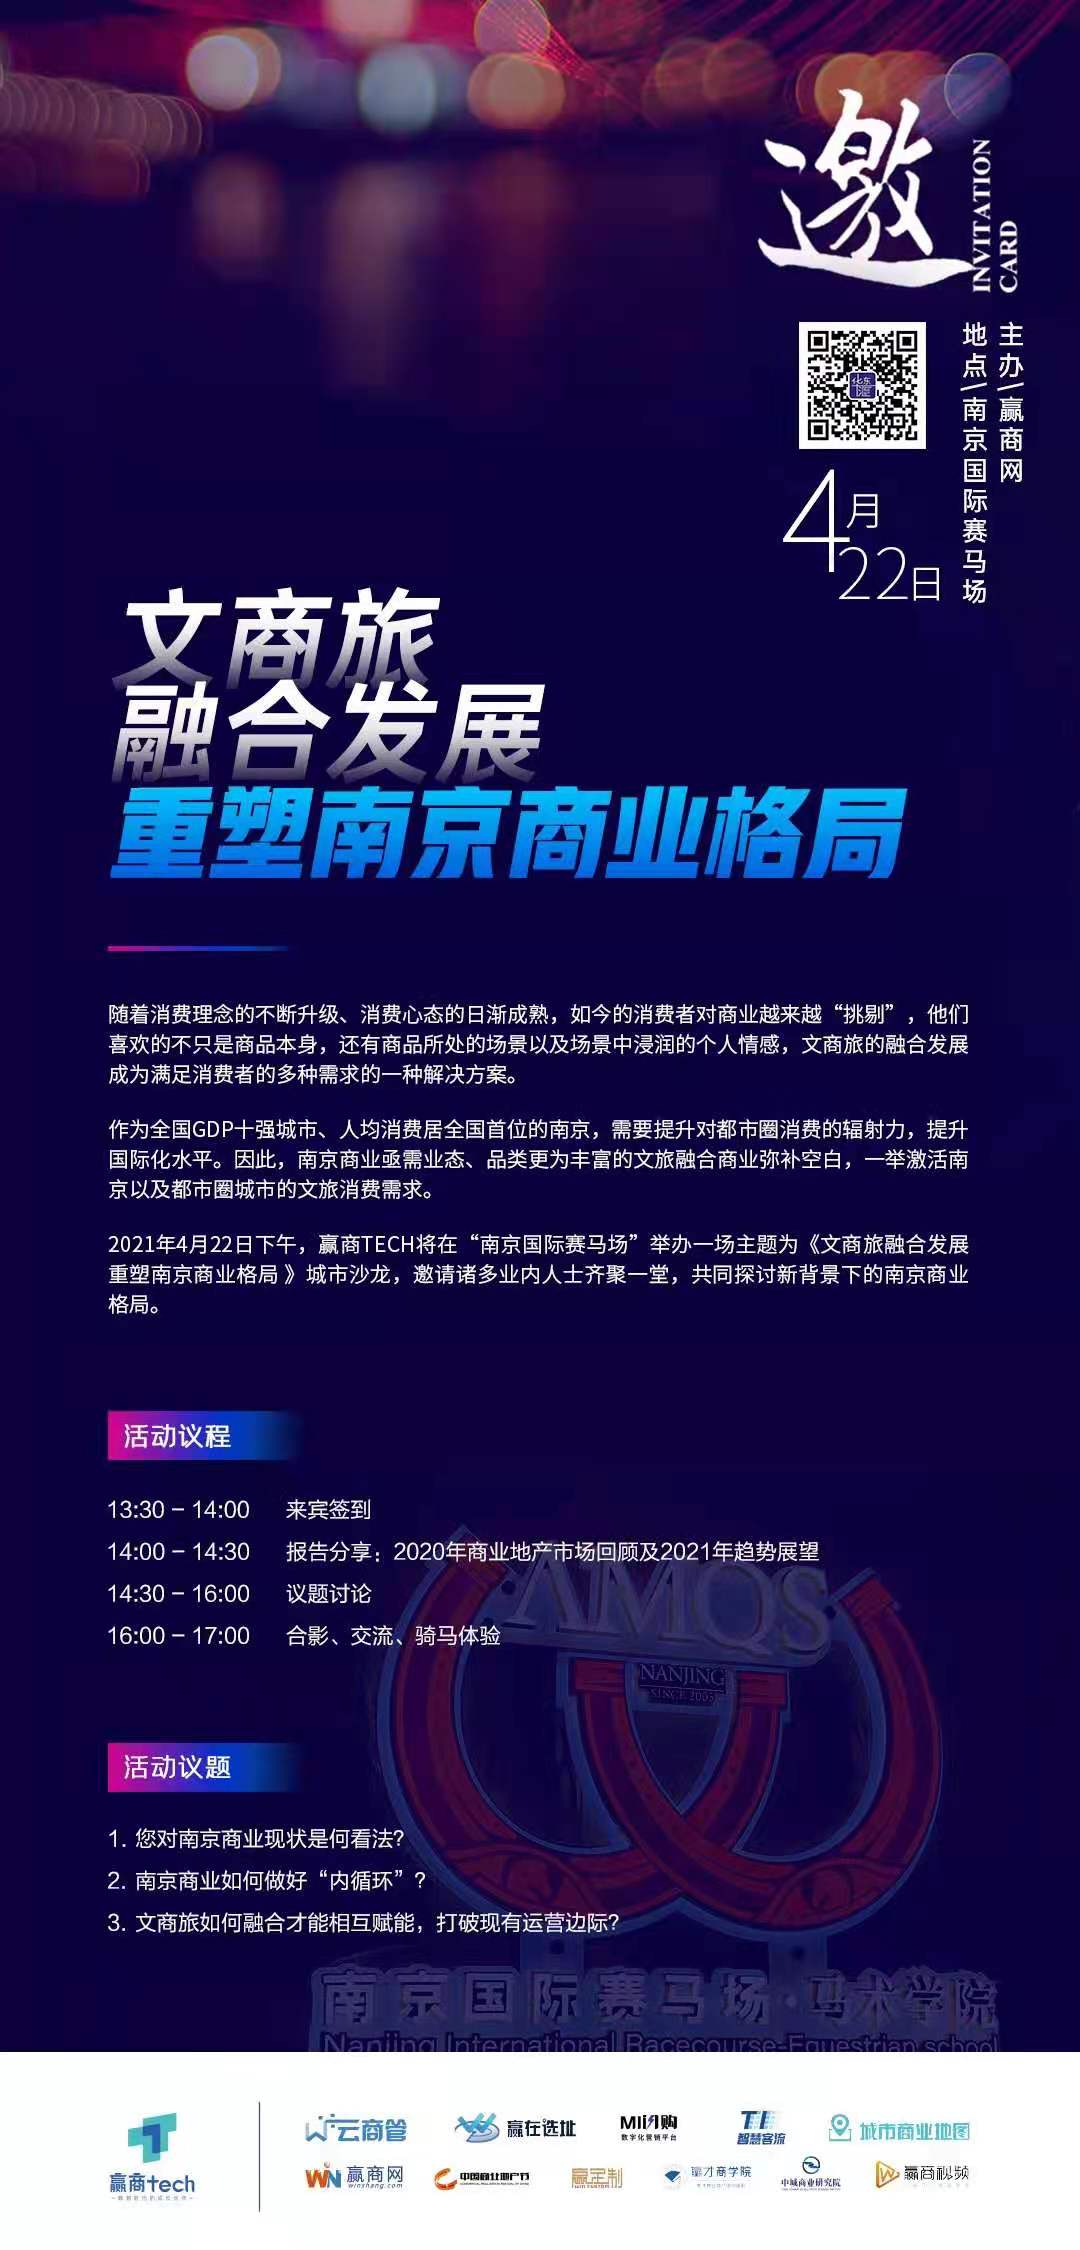 沙龙预告：文商旅融合发展 重塑南京商业格局